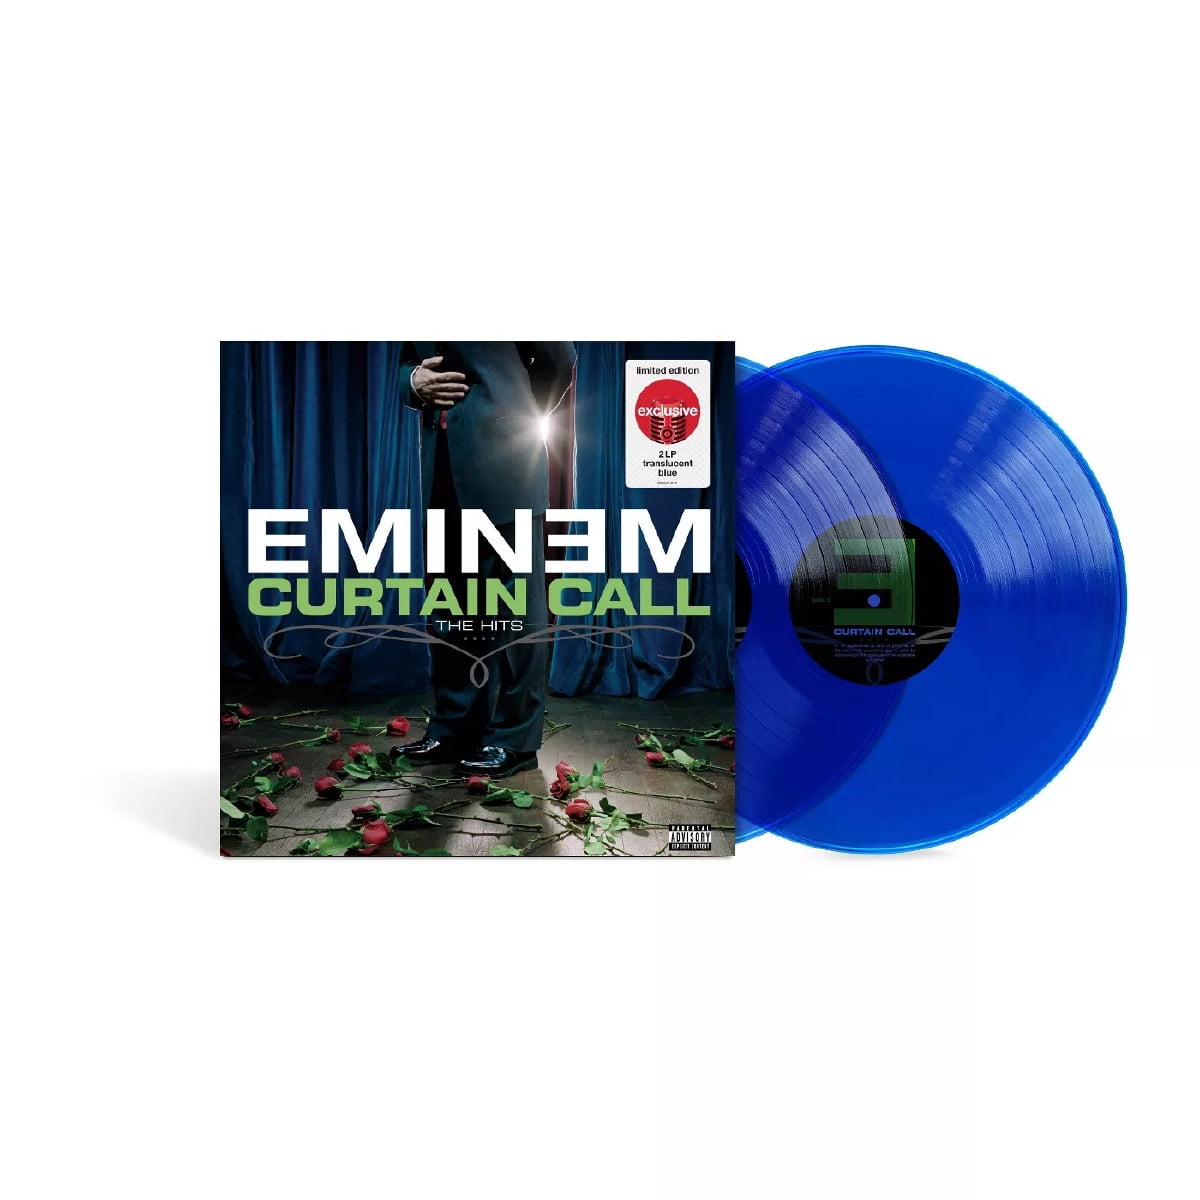 Eminem curtain call. Eminem Curtain Call 2 Vinyl. Eminem. Curtain Call. The Hits. 2005. Eminem Vinyl. Eminem пластинка винил Curtain Call.